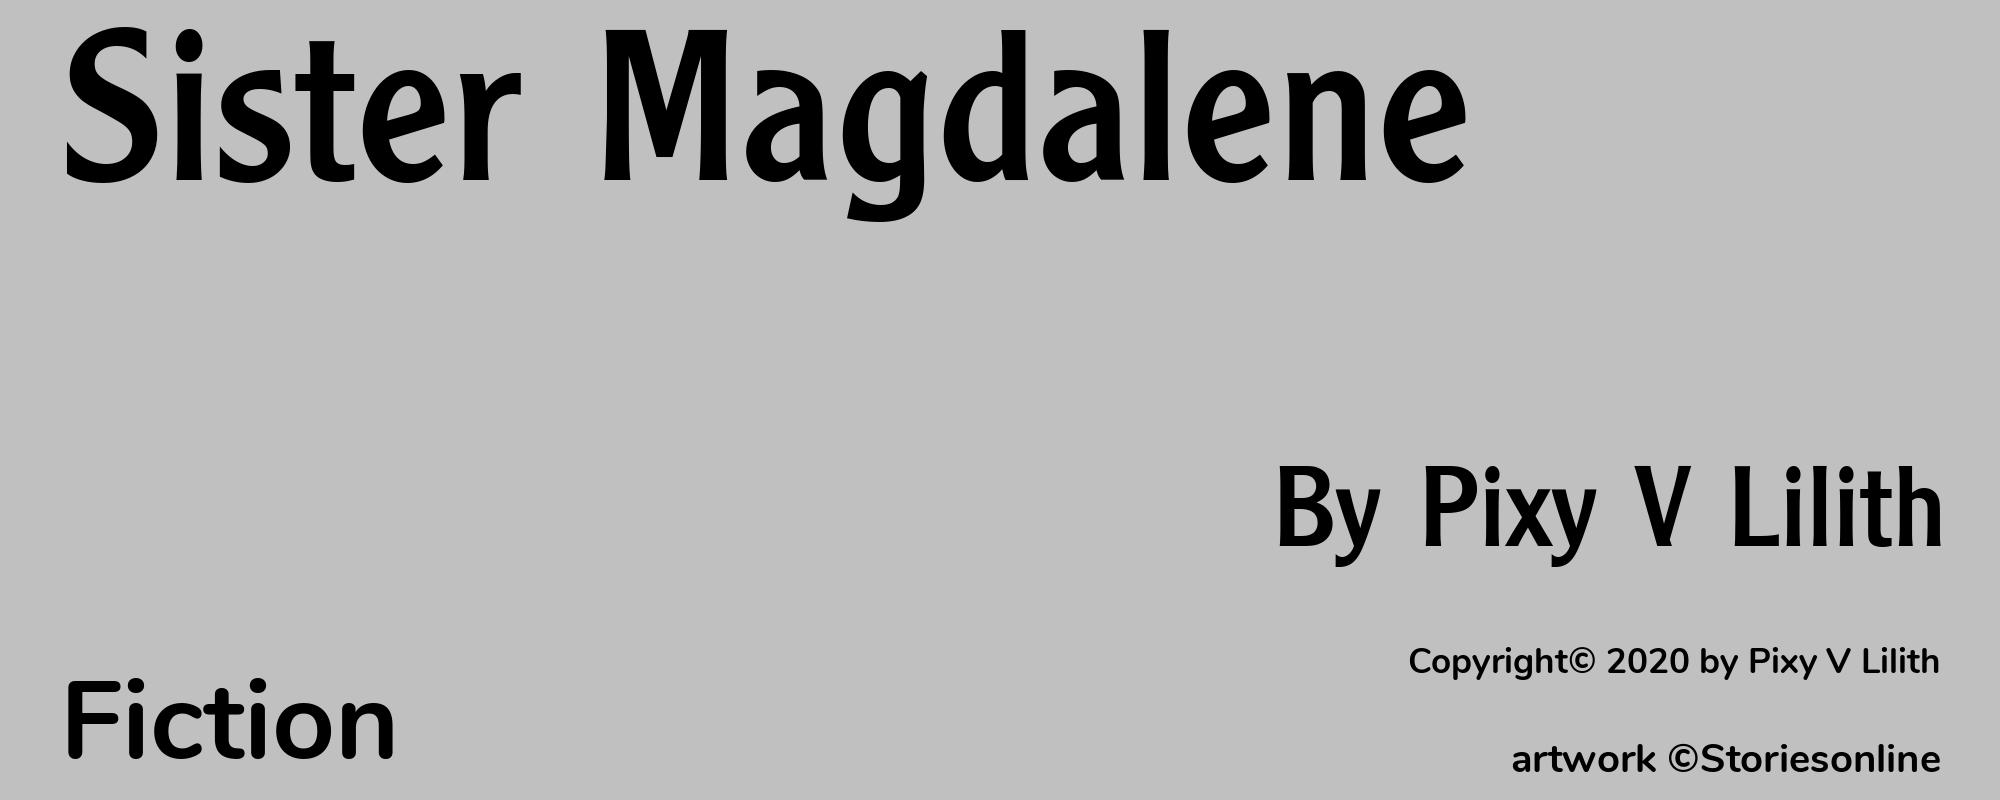 Sister Magdalene - Cover